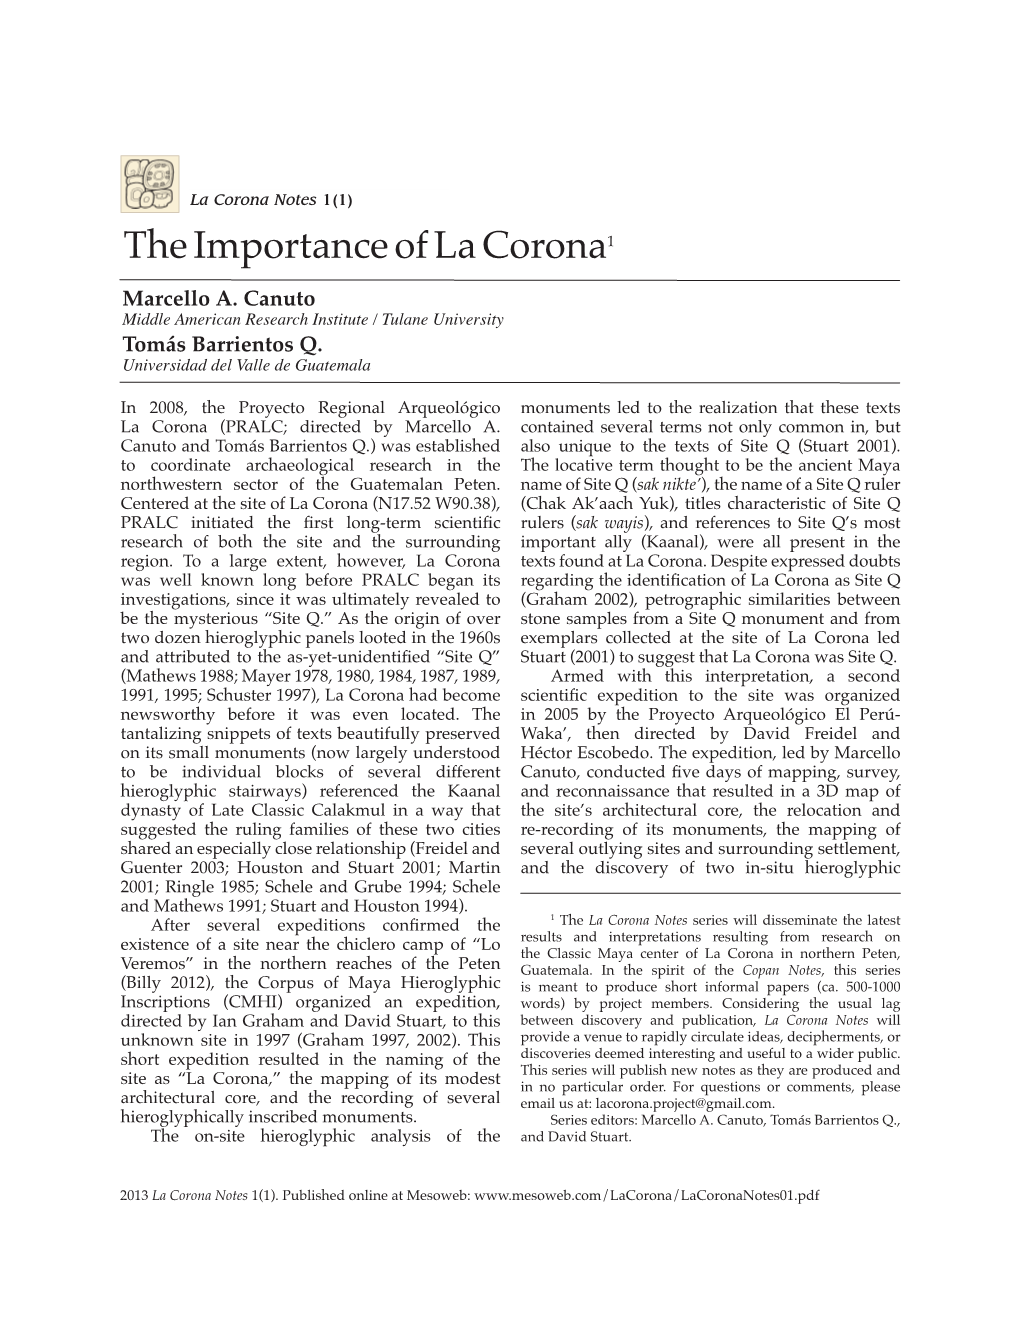 The Importance of La Corona1 Marcello A